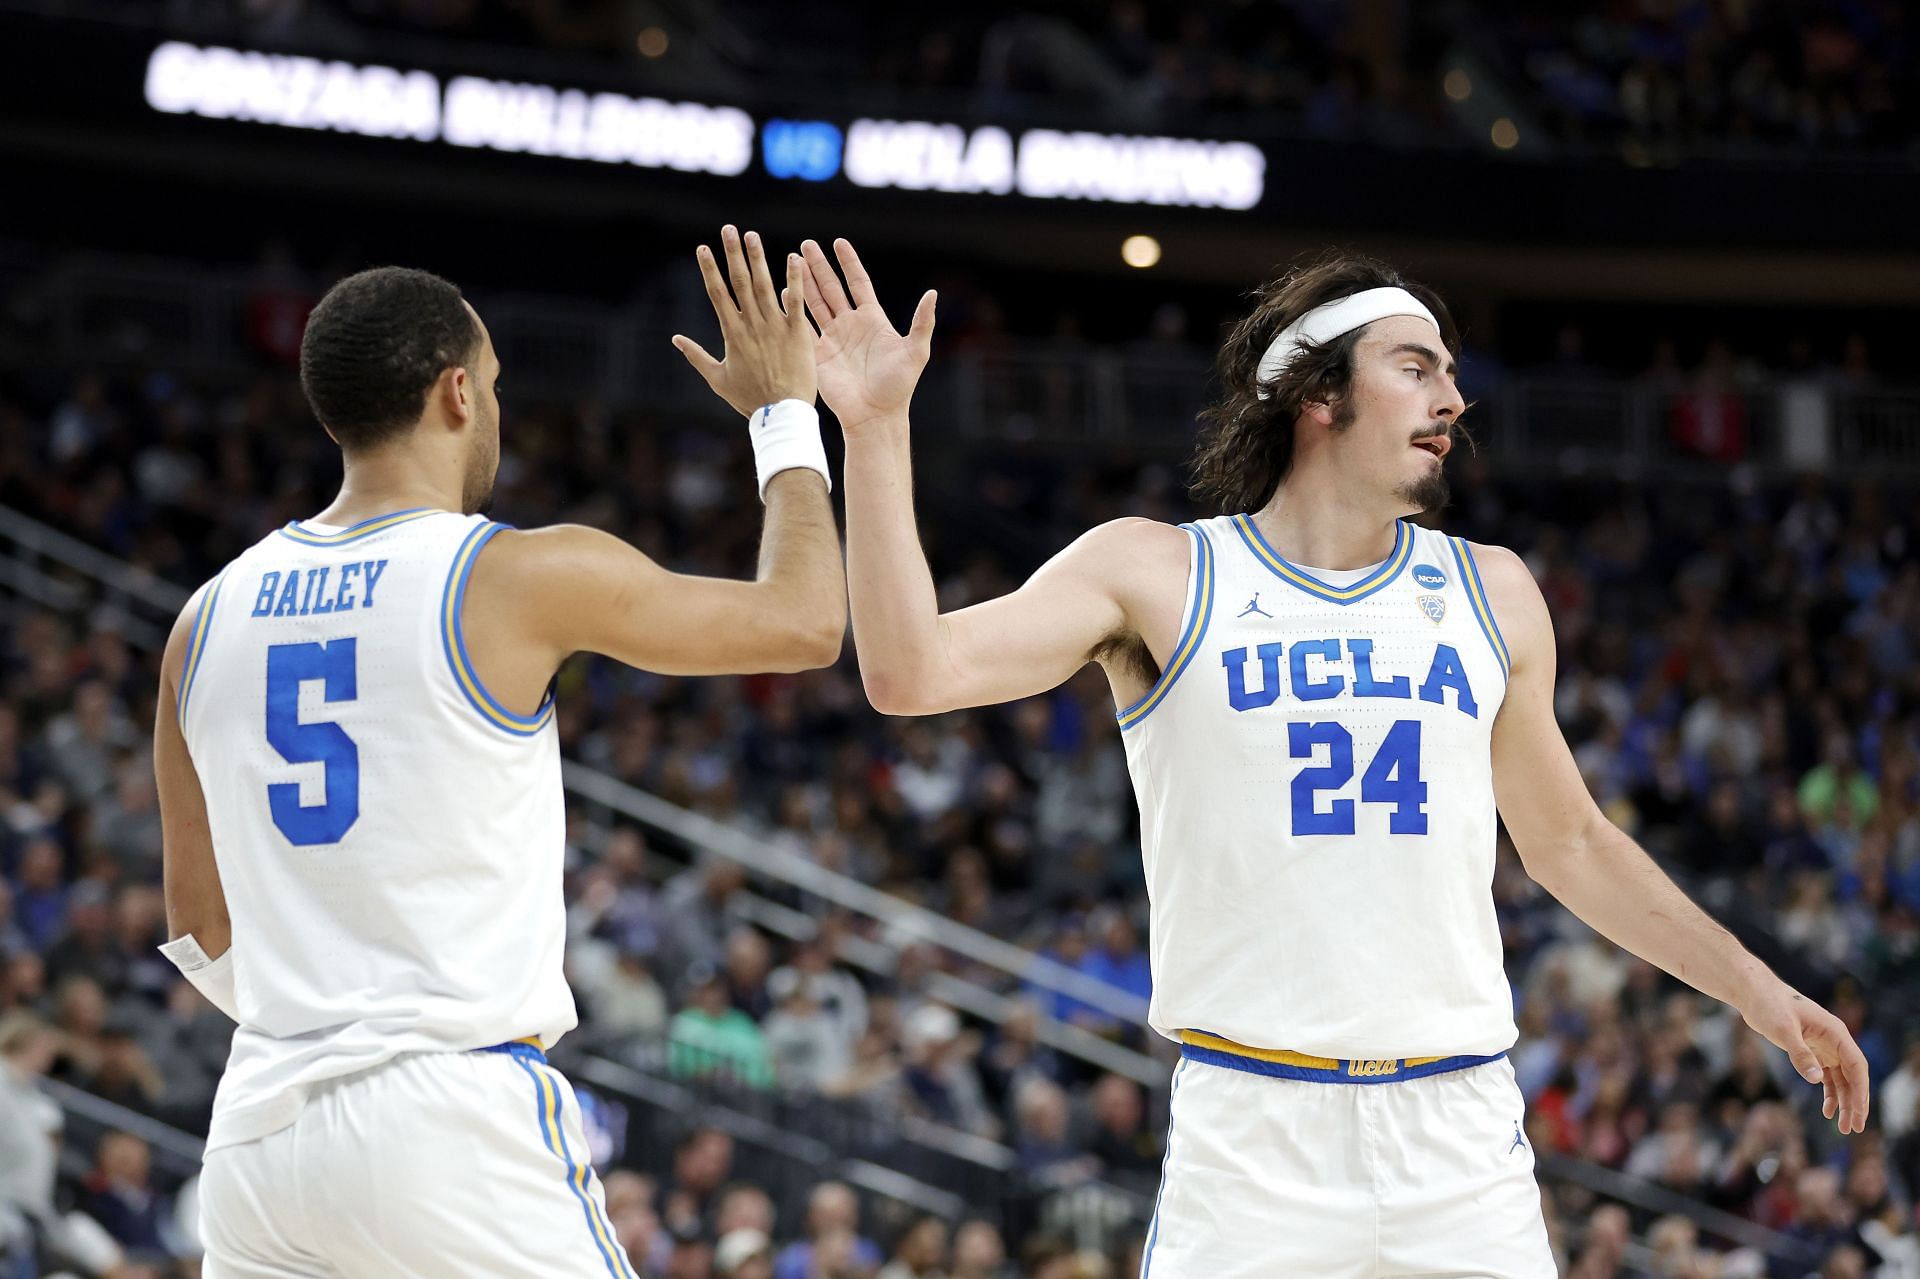 UCLA's Jaquez Jr. headlines Pac-12 Men's Basketball's four picks